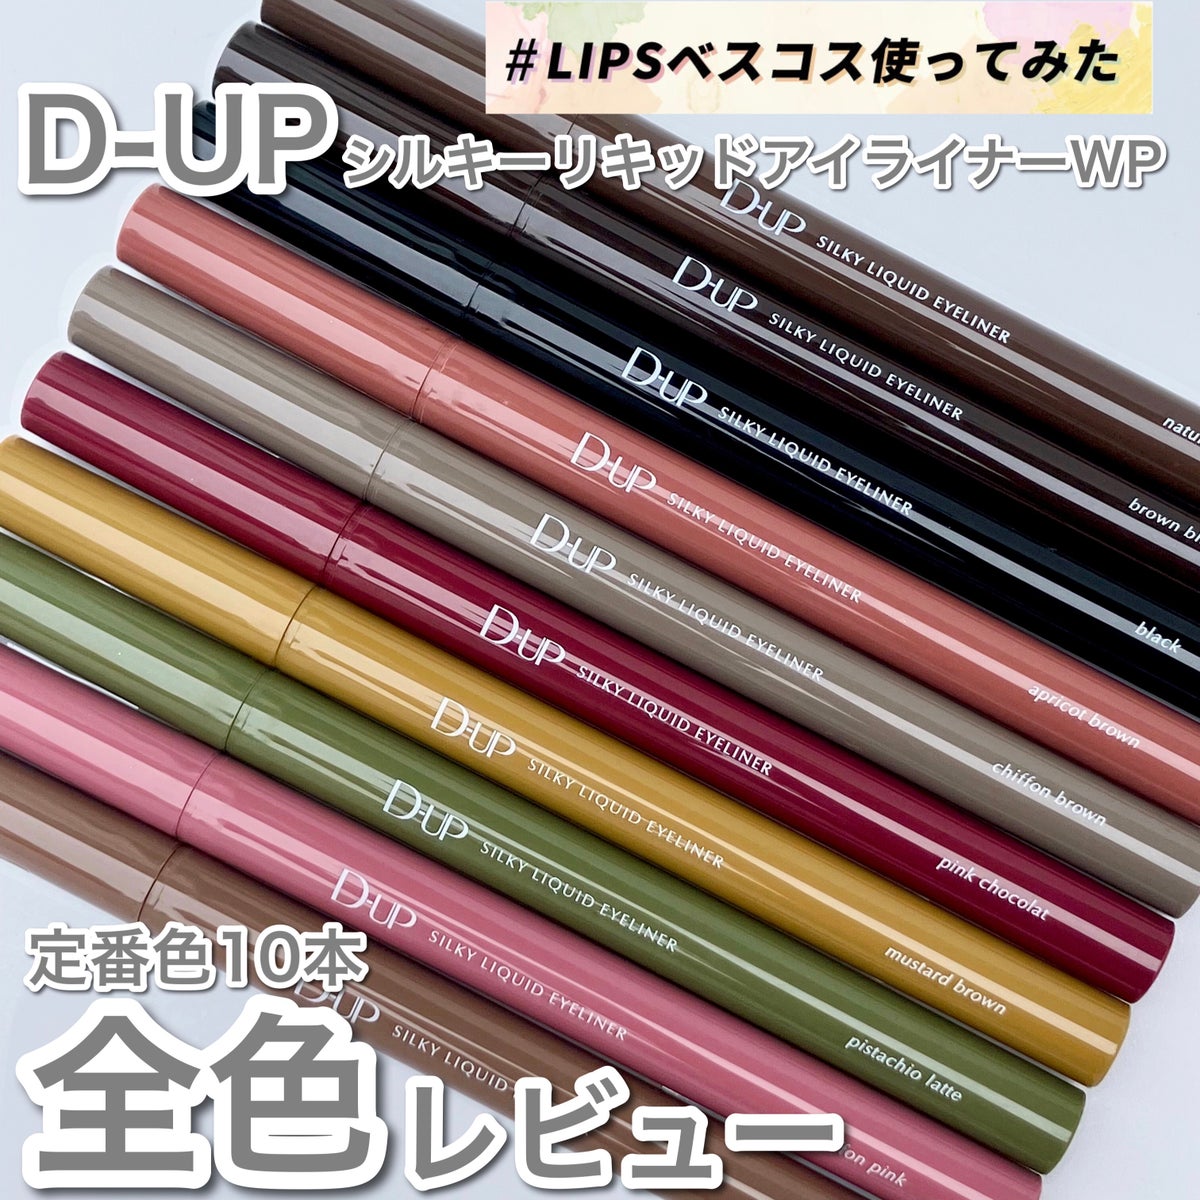 ちゃき on LIPS 「〜D-UPアイライナー 全色レビュー〜 ..」 | LIPS